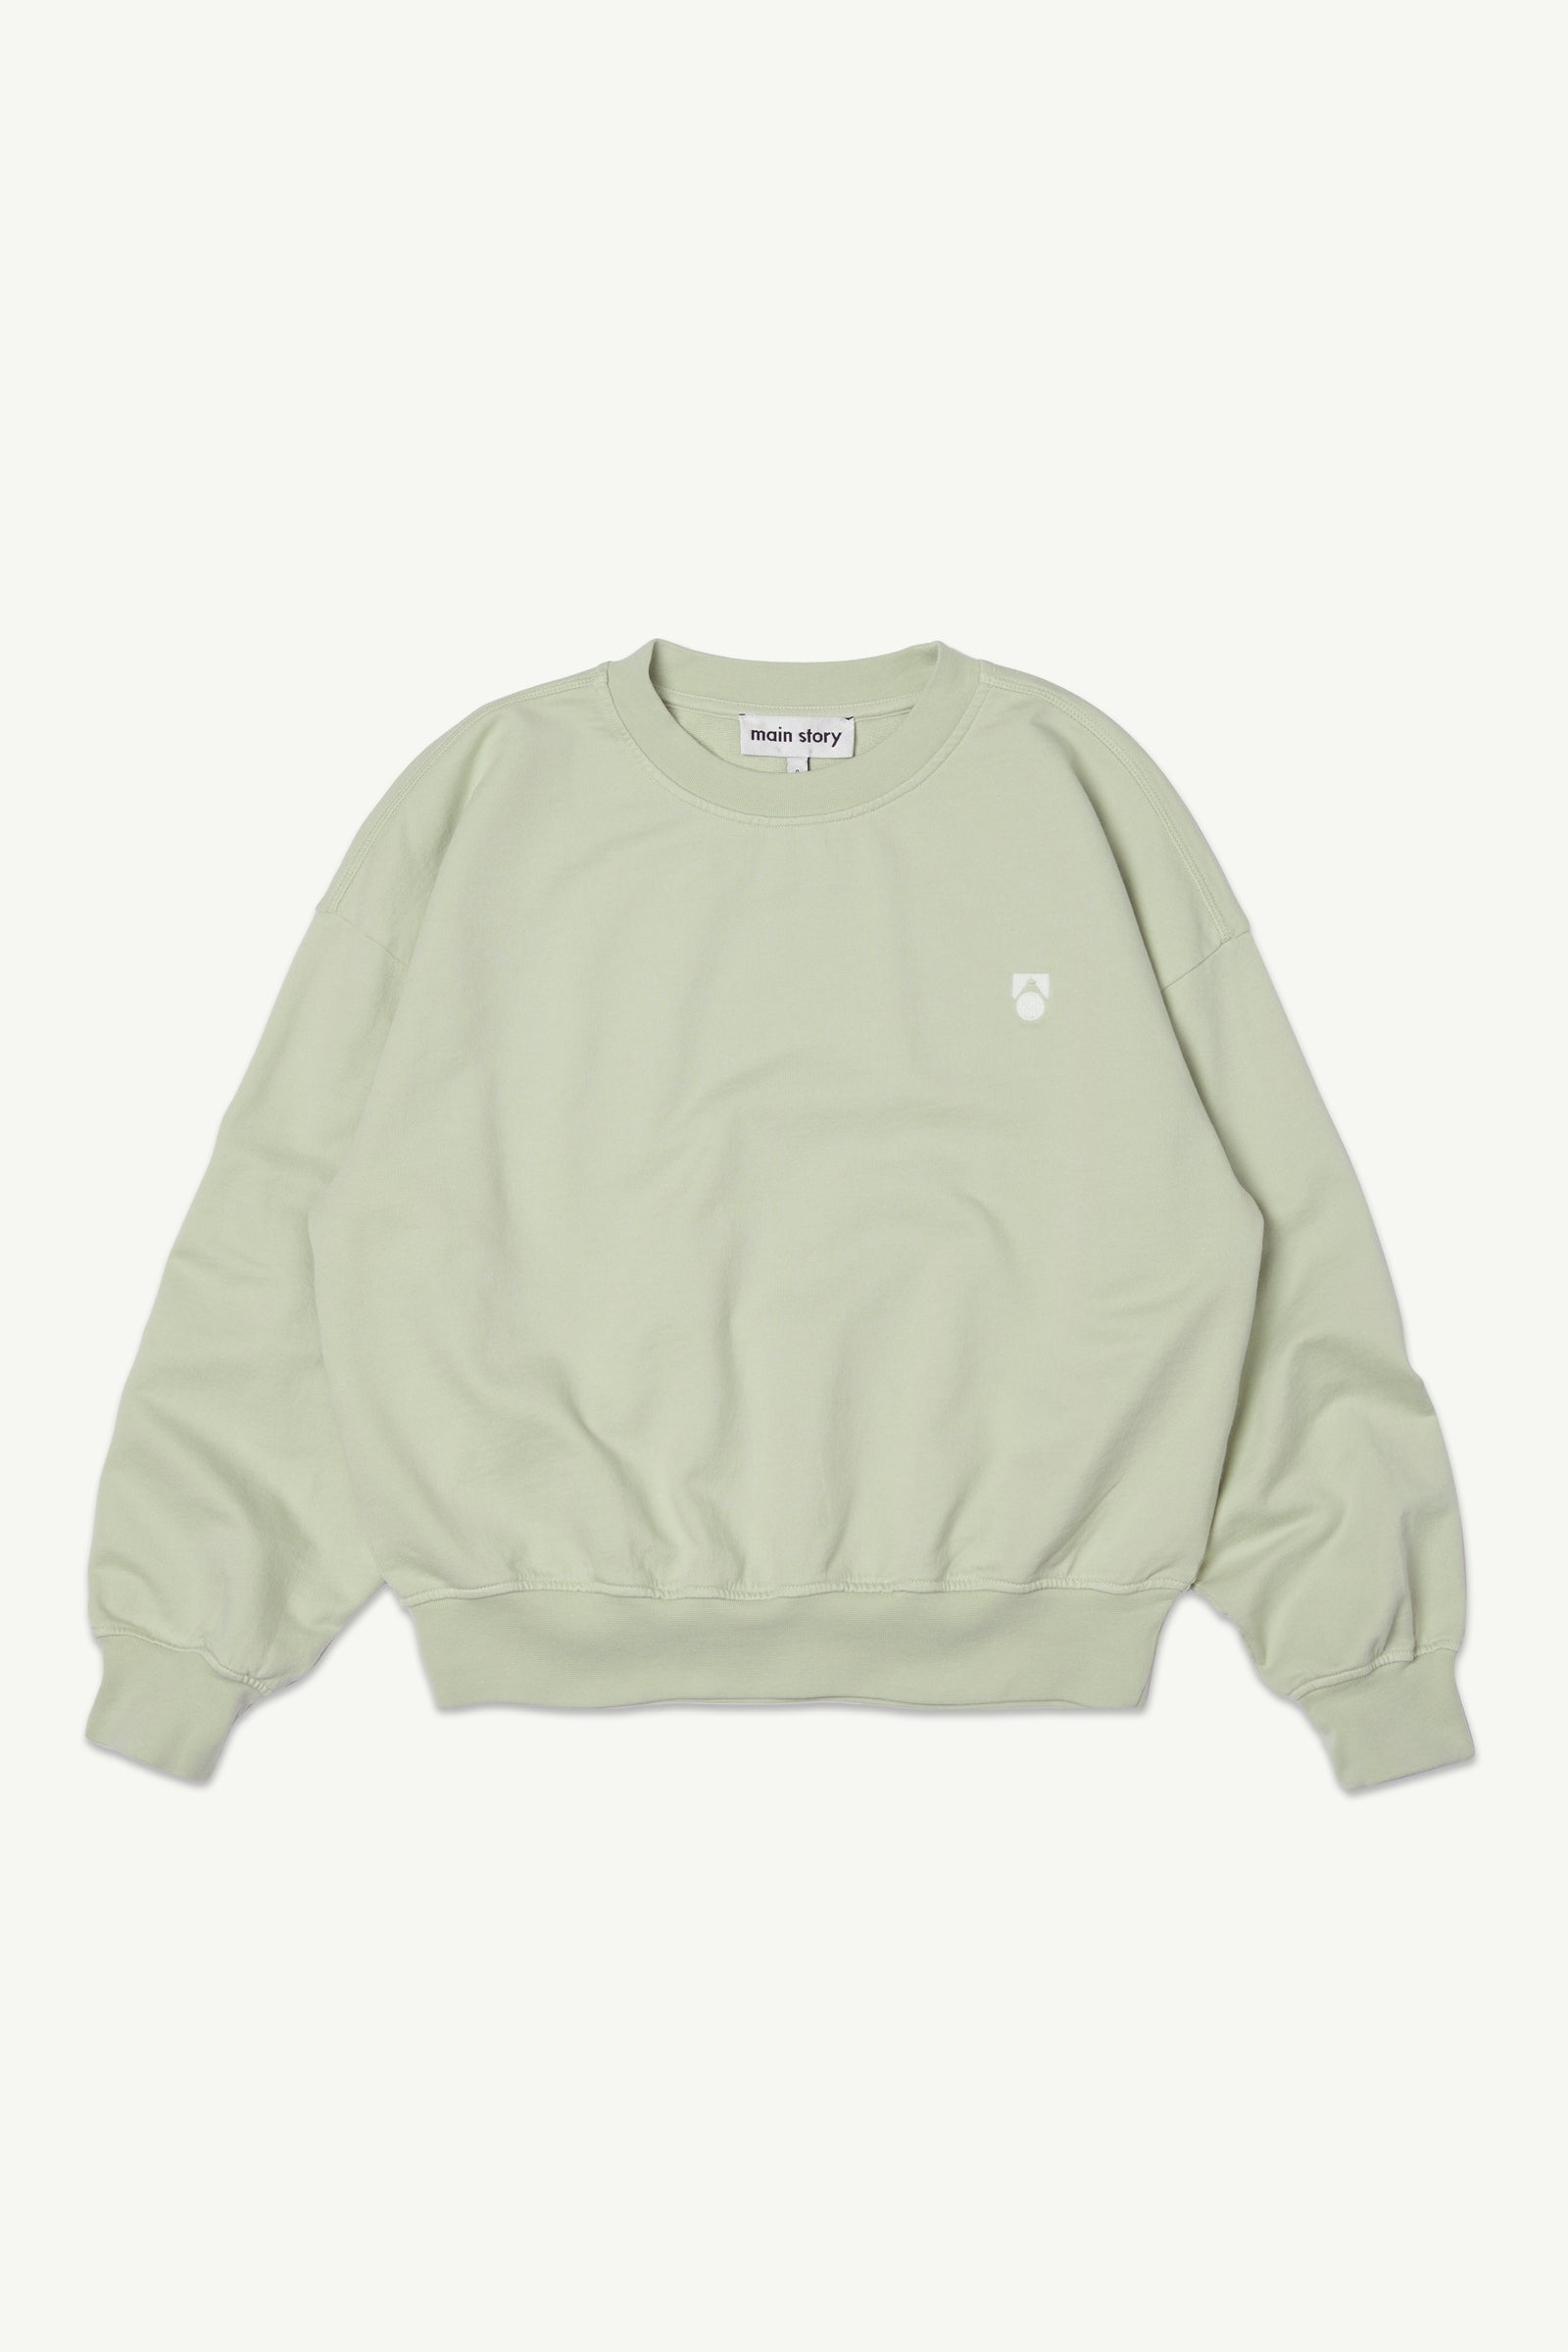 Main Story - bubble sweatshirt - tender green fleece